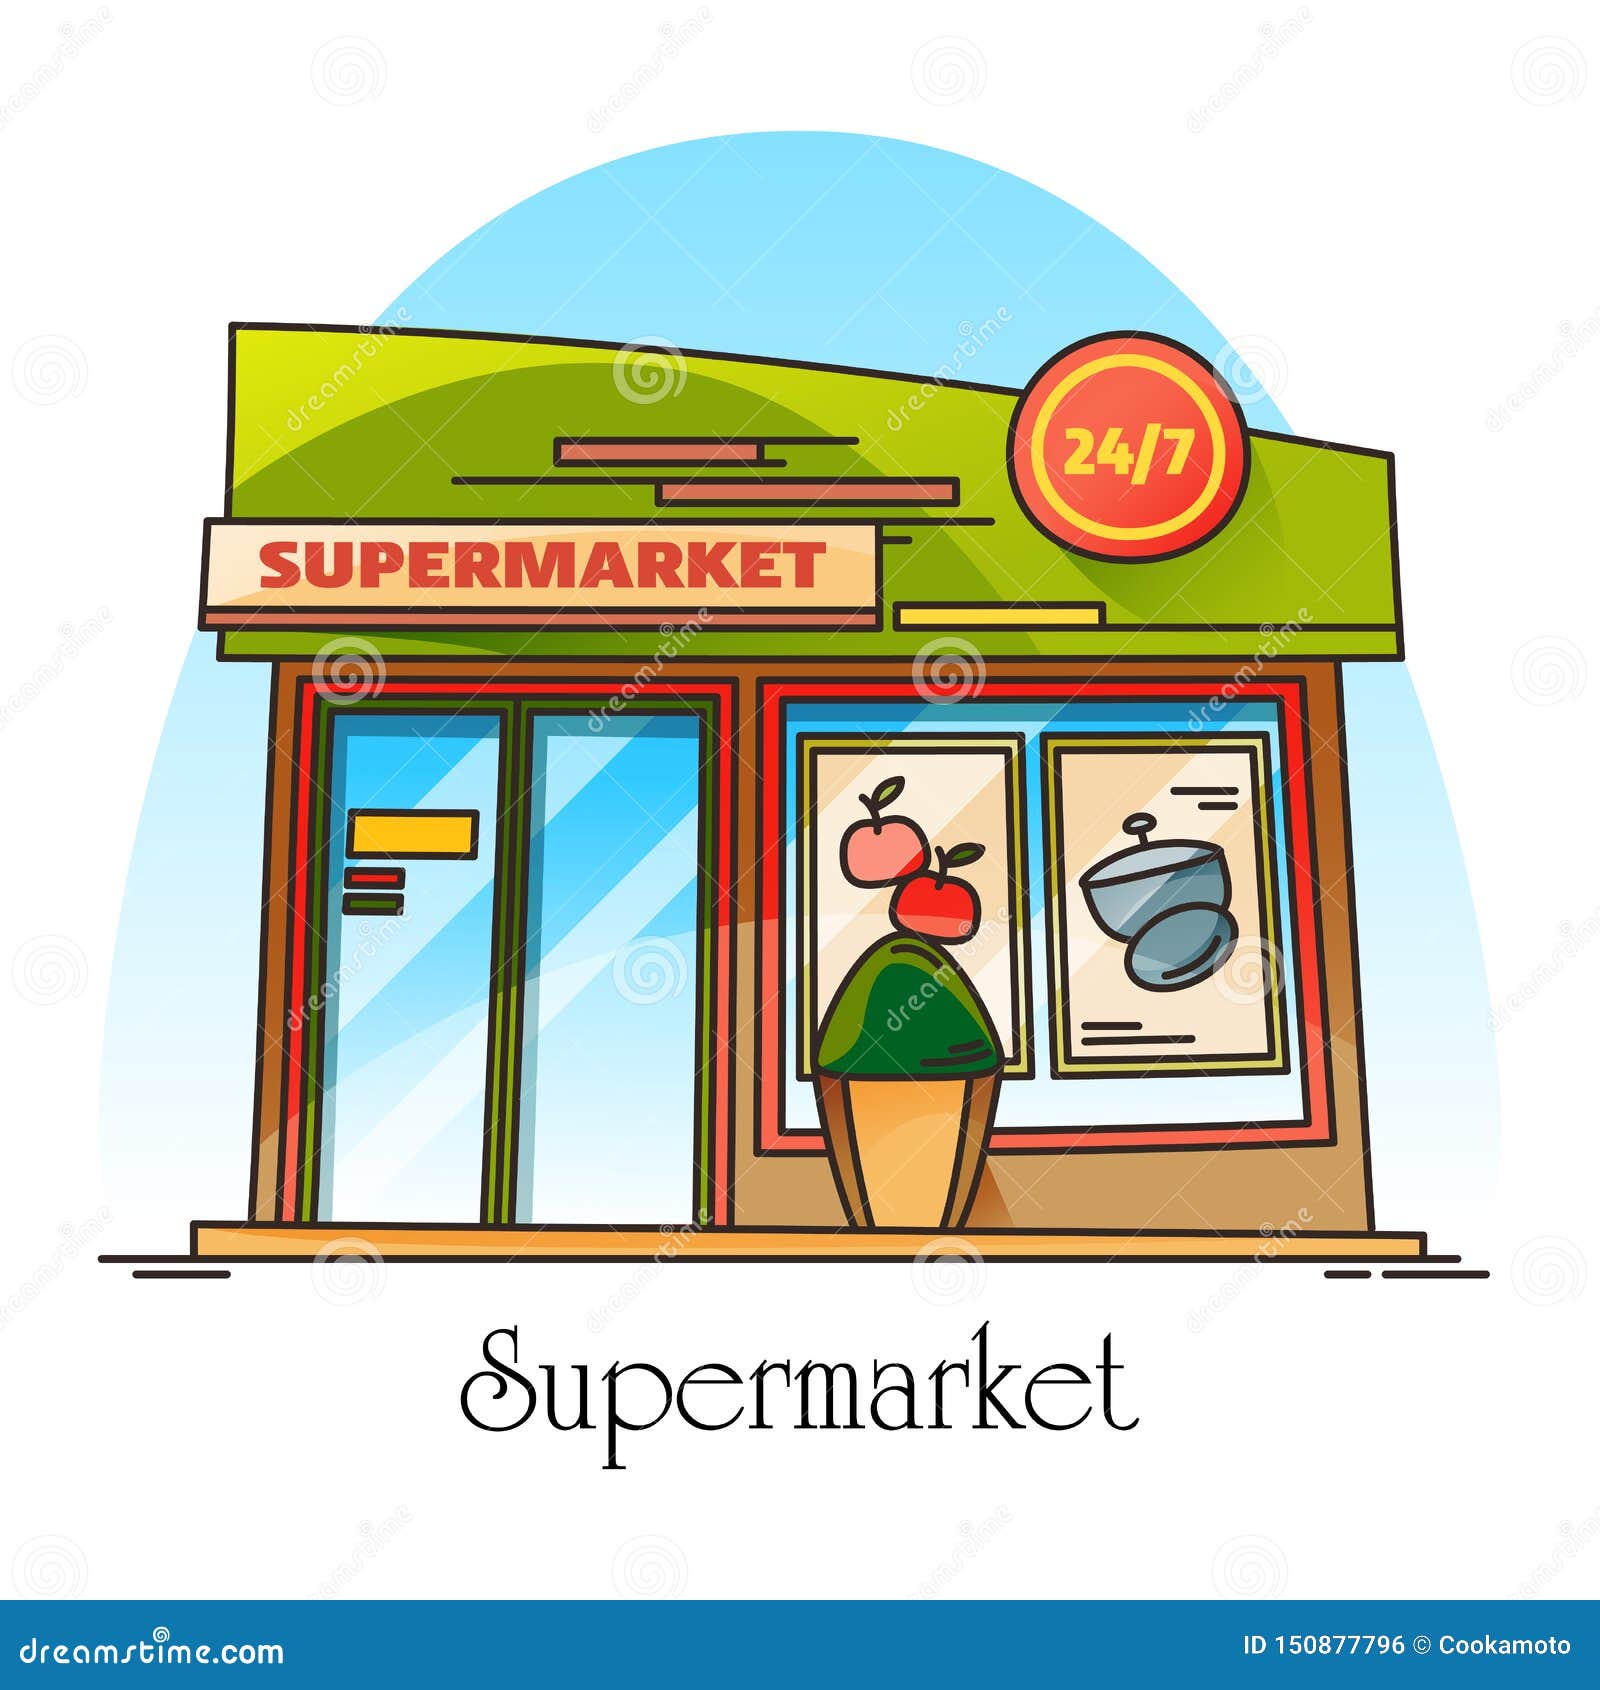 supermarket market structure